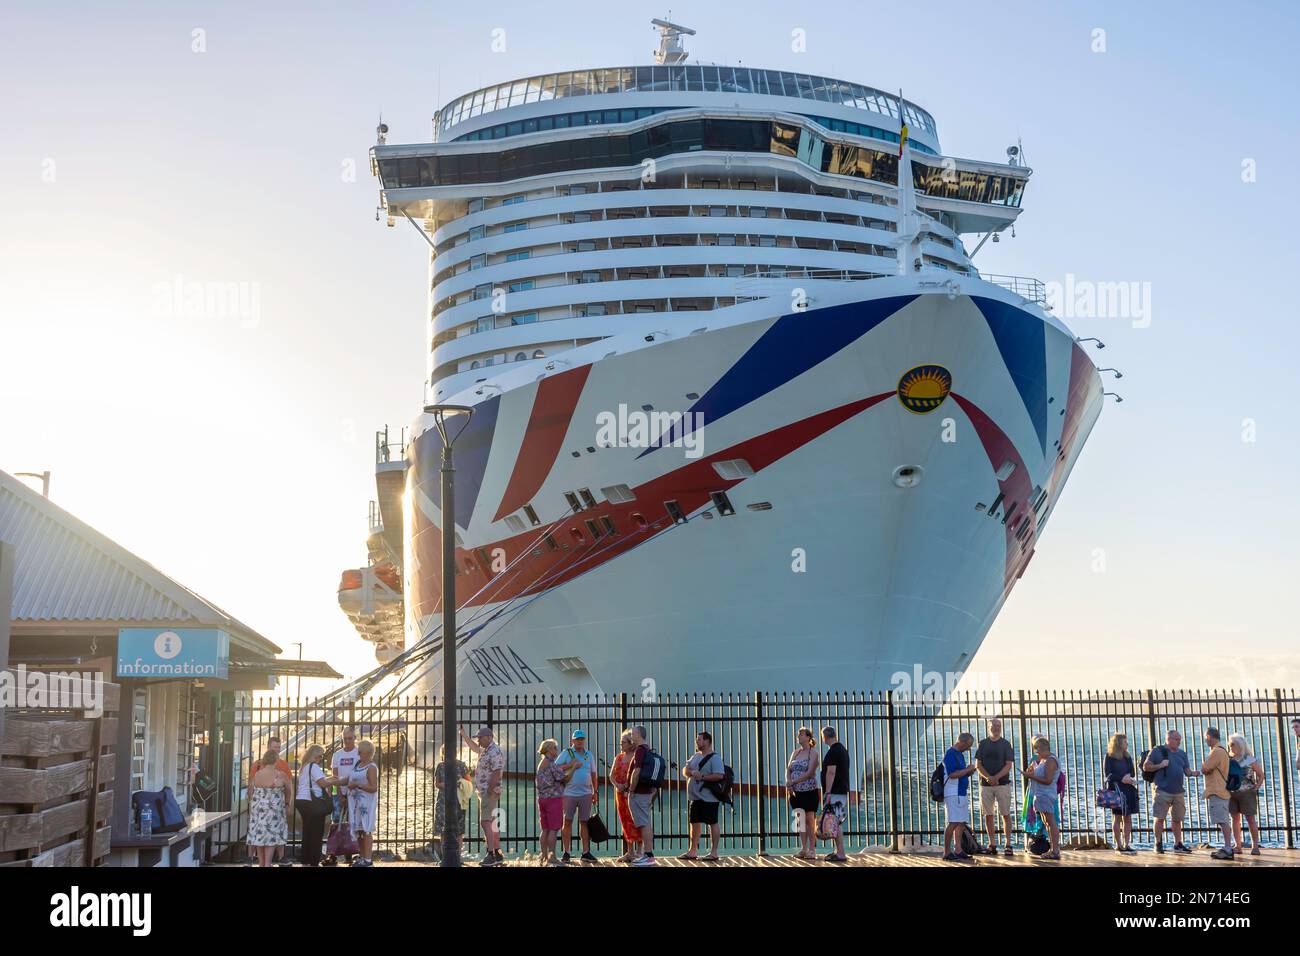 P&O Kreuzfahrtschiff Arvia vor Anker in Road Town, Tortola mit Reihen von Ausflugsreisenden, Britische Jungferninseln (BVI), kleine Antillen, Karibik Stockfoto